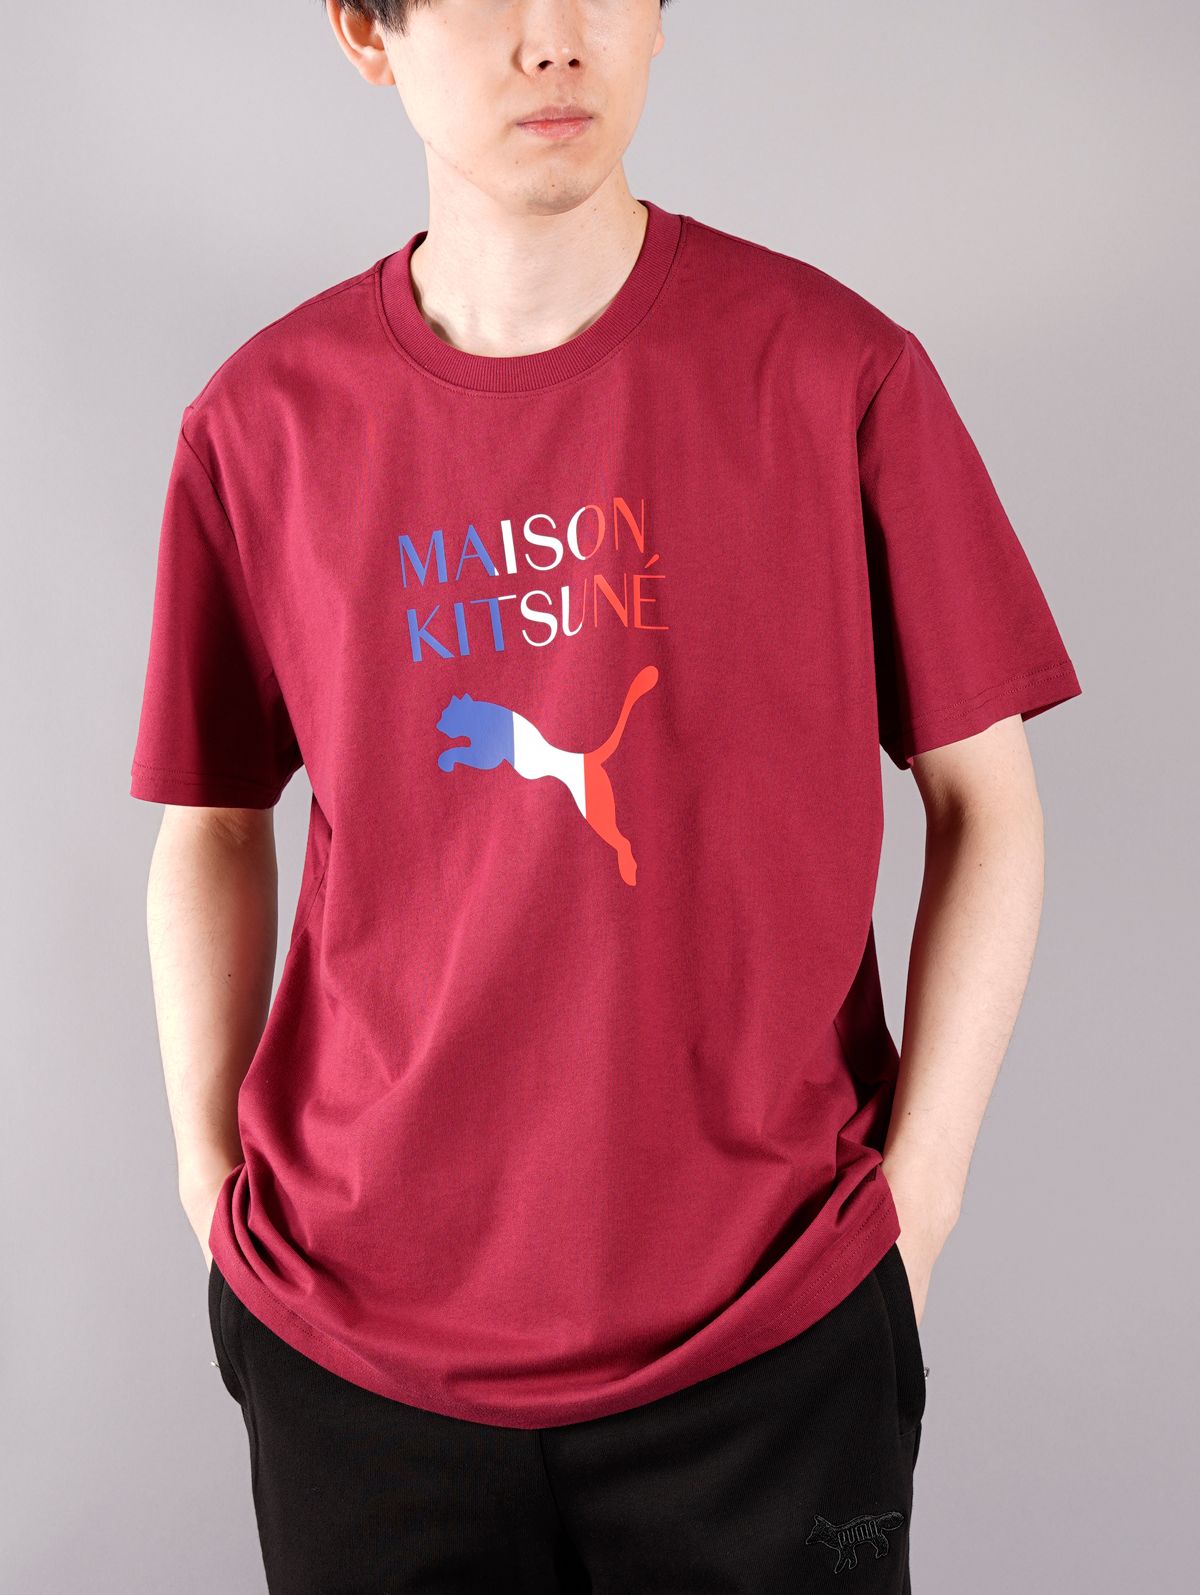 ラスト1点 / PUMA X MAISON KITSUNE OVERSIZE TEE / プーマ / メゾン キツネ オーバーサイズ Tシャツ  (トラバーチン) - S